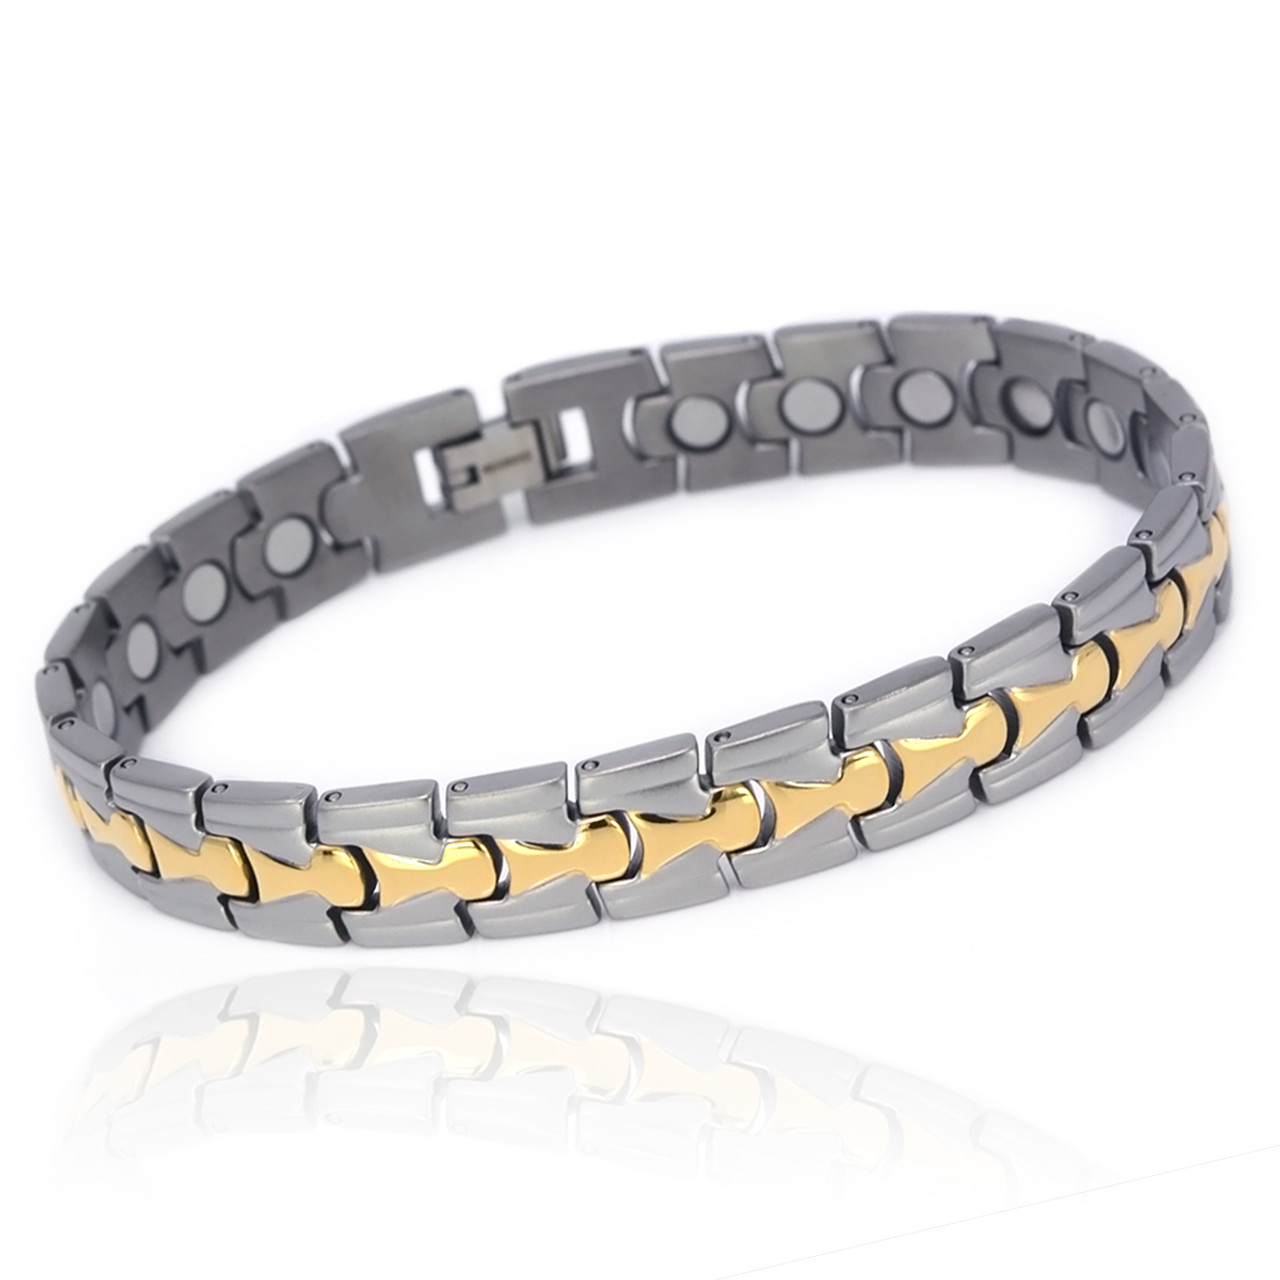 <img src=" Magnetic Bracelet Novoa Titanium.png" alt="Magnetic Bracelet Novoa Titanium Men's Satin With Gold Accent  ">